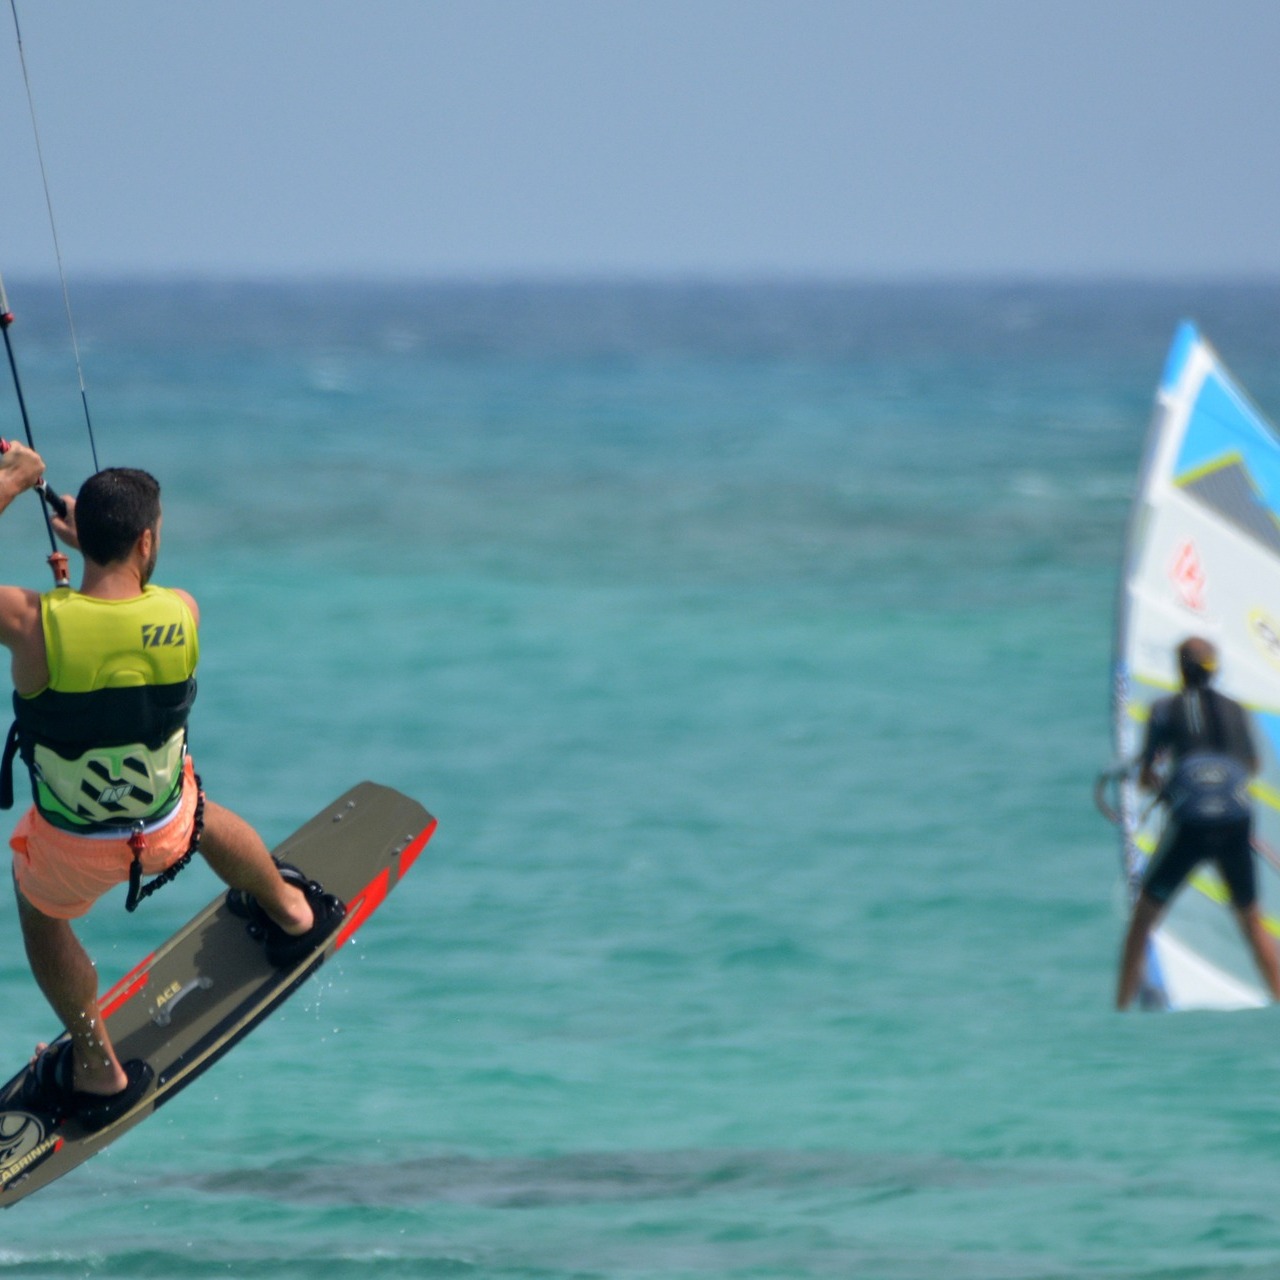 Twee watersportende mensen. Een kite surfer helder in de voorgrond en een windsurfer in de achtergrond.